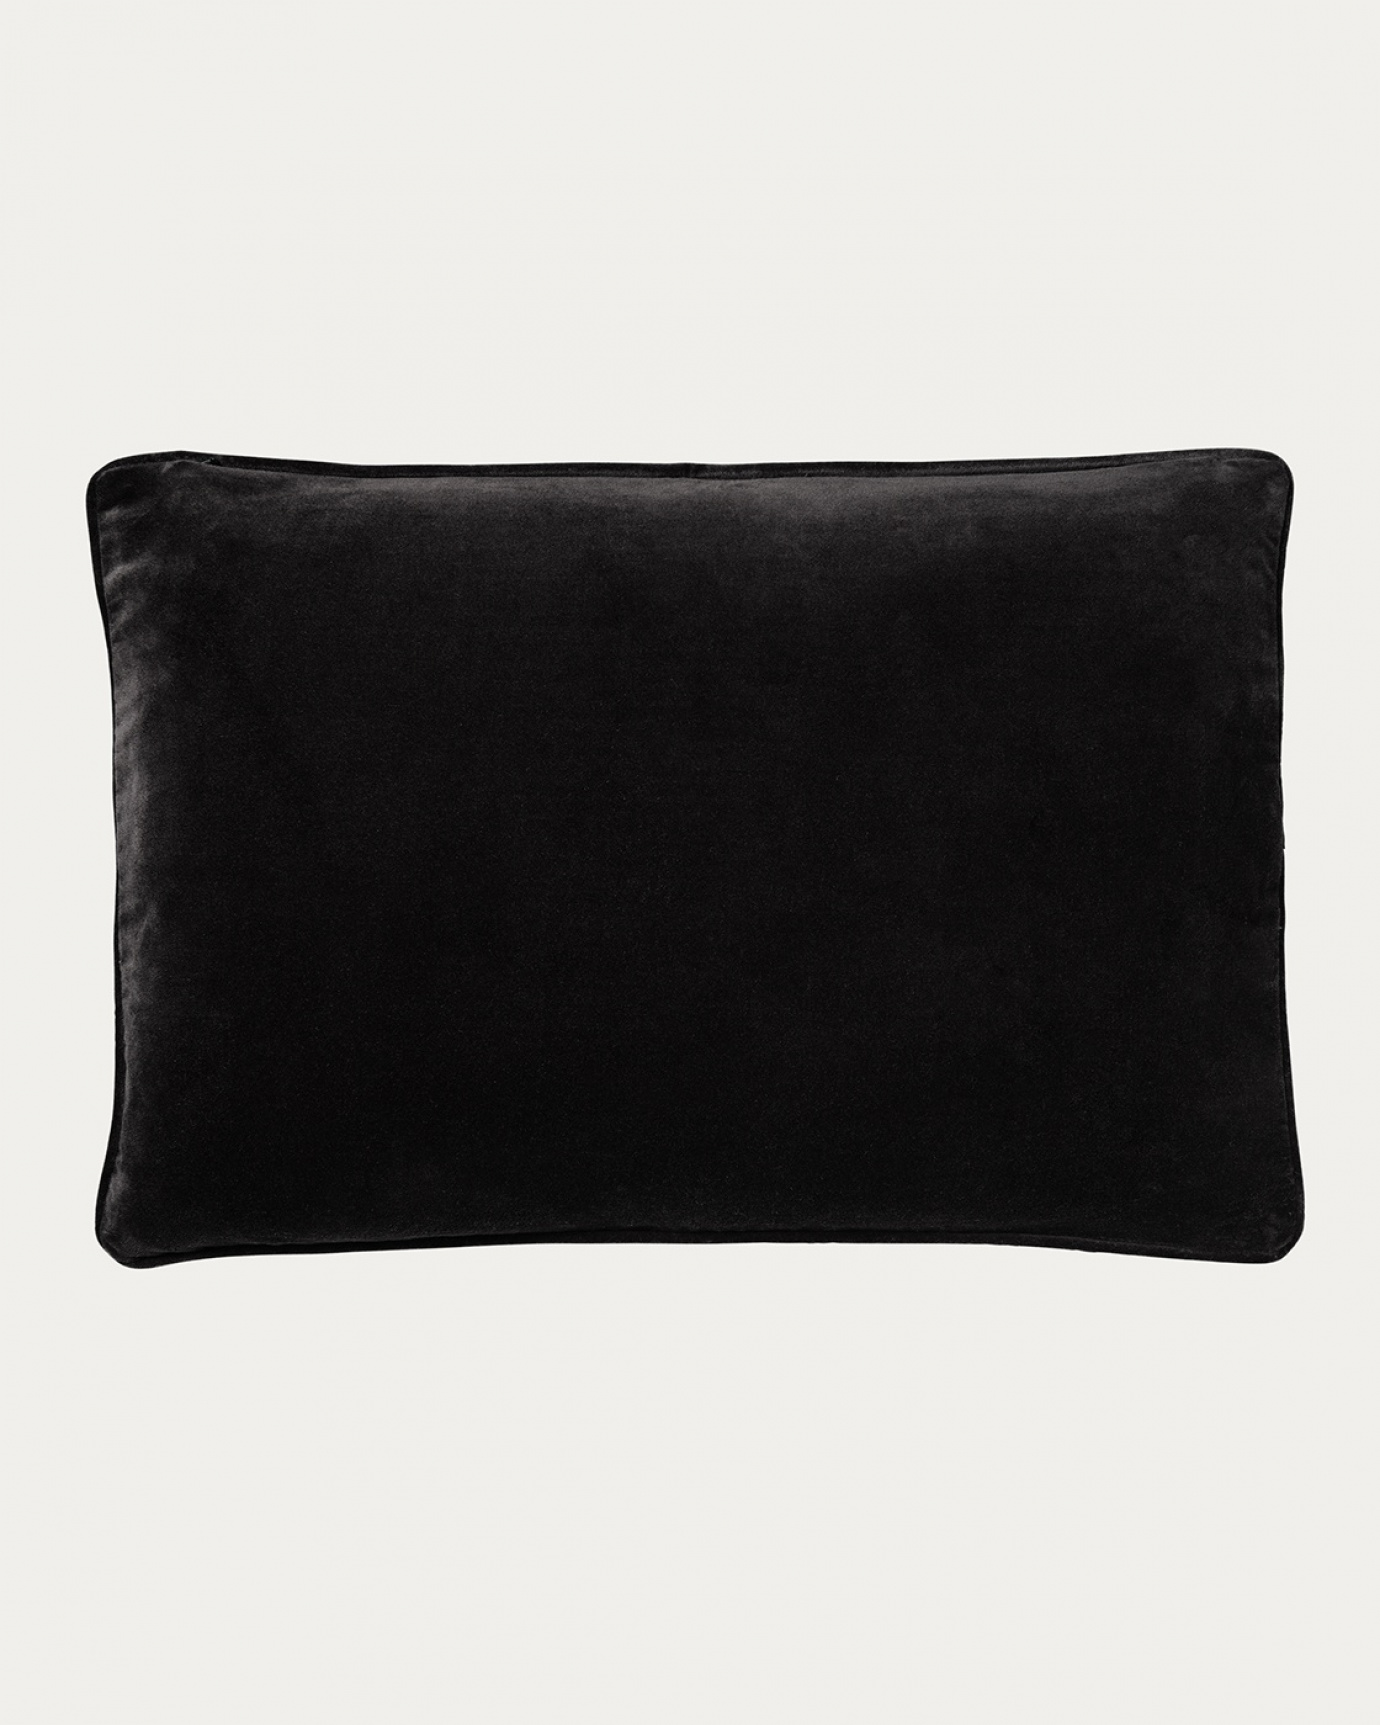 Produktbild schwarz PAOLO Kissenhülle aus weichem Samt aus bio-baumwolle von LINUM DESIGN. Größe 40x60 cm.